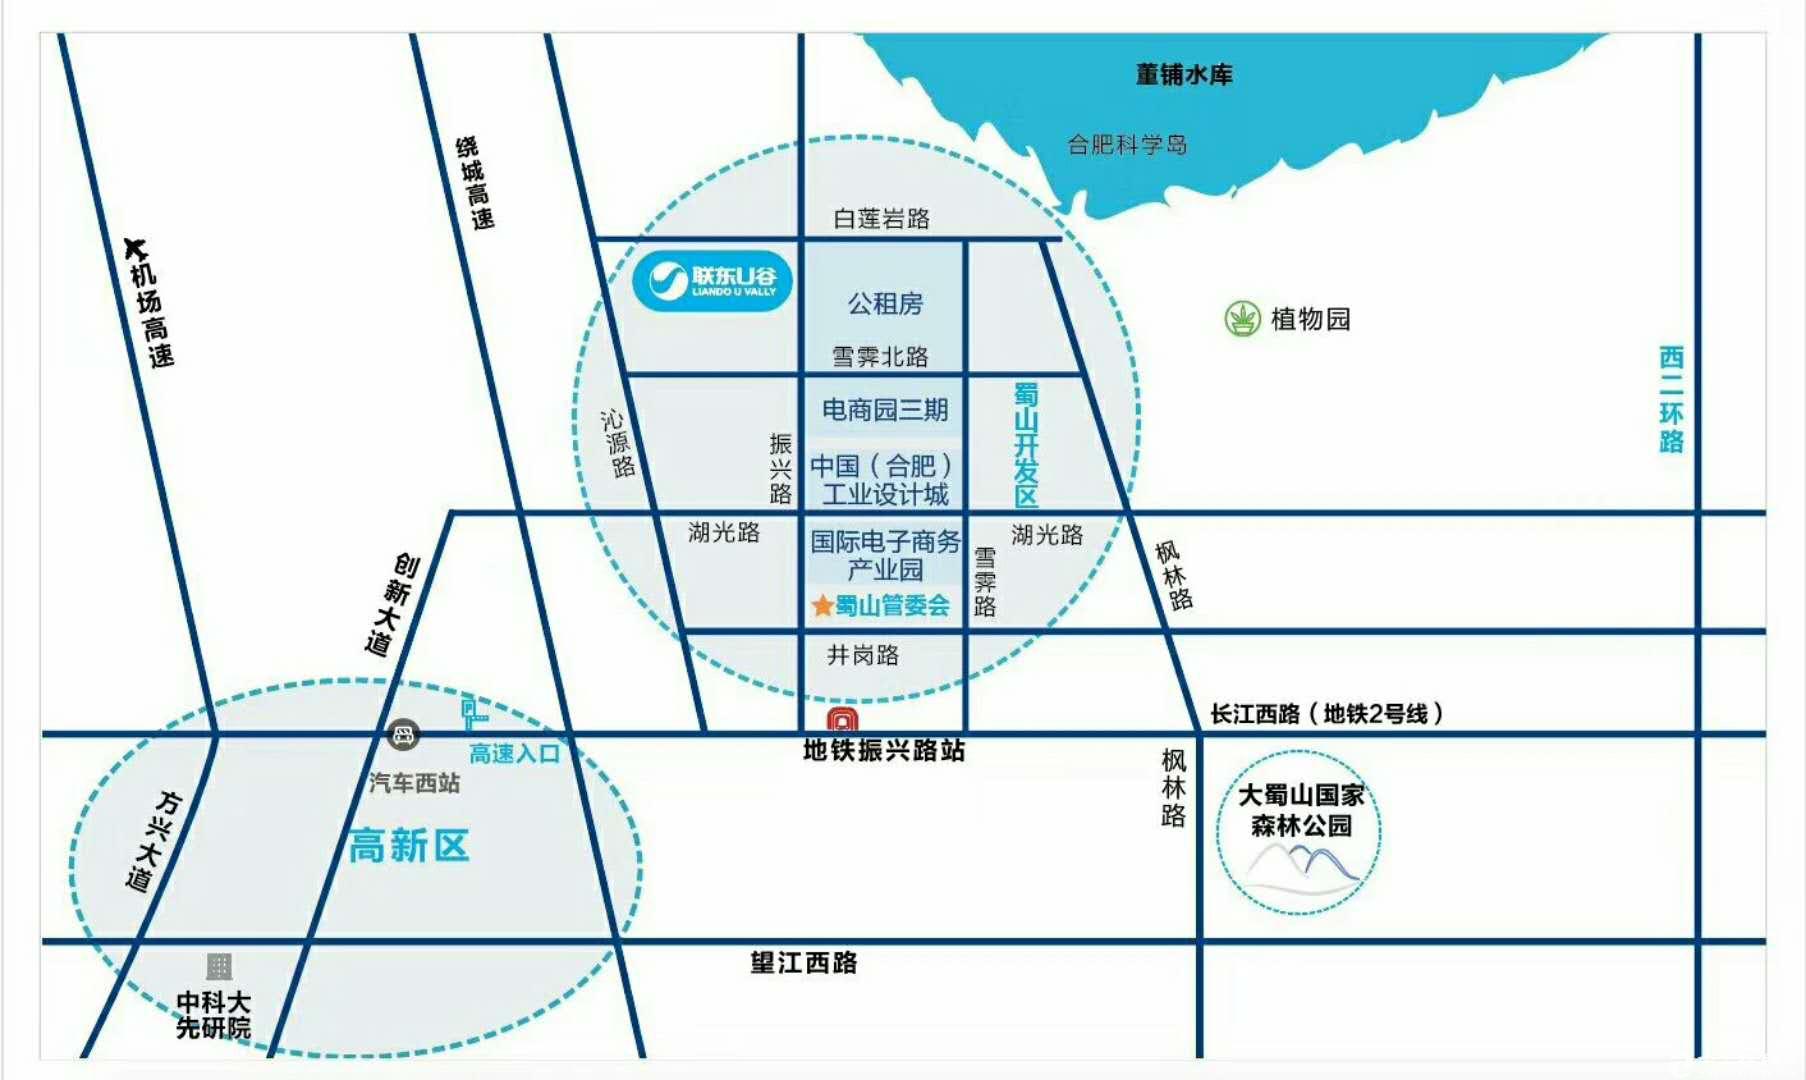 联东U谷*蜀山国际企业港-企业选址福地-图3